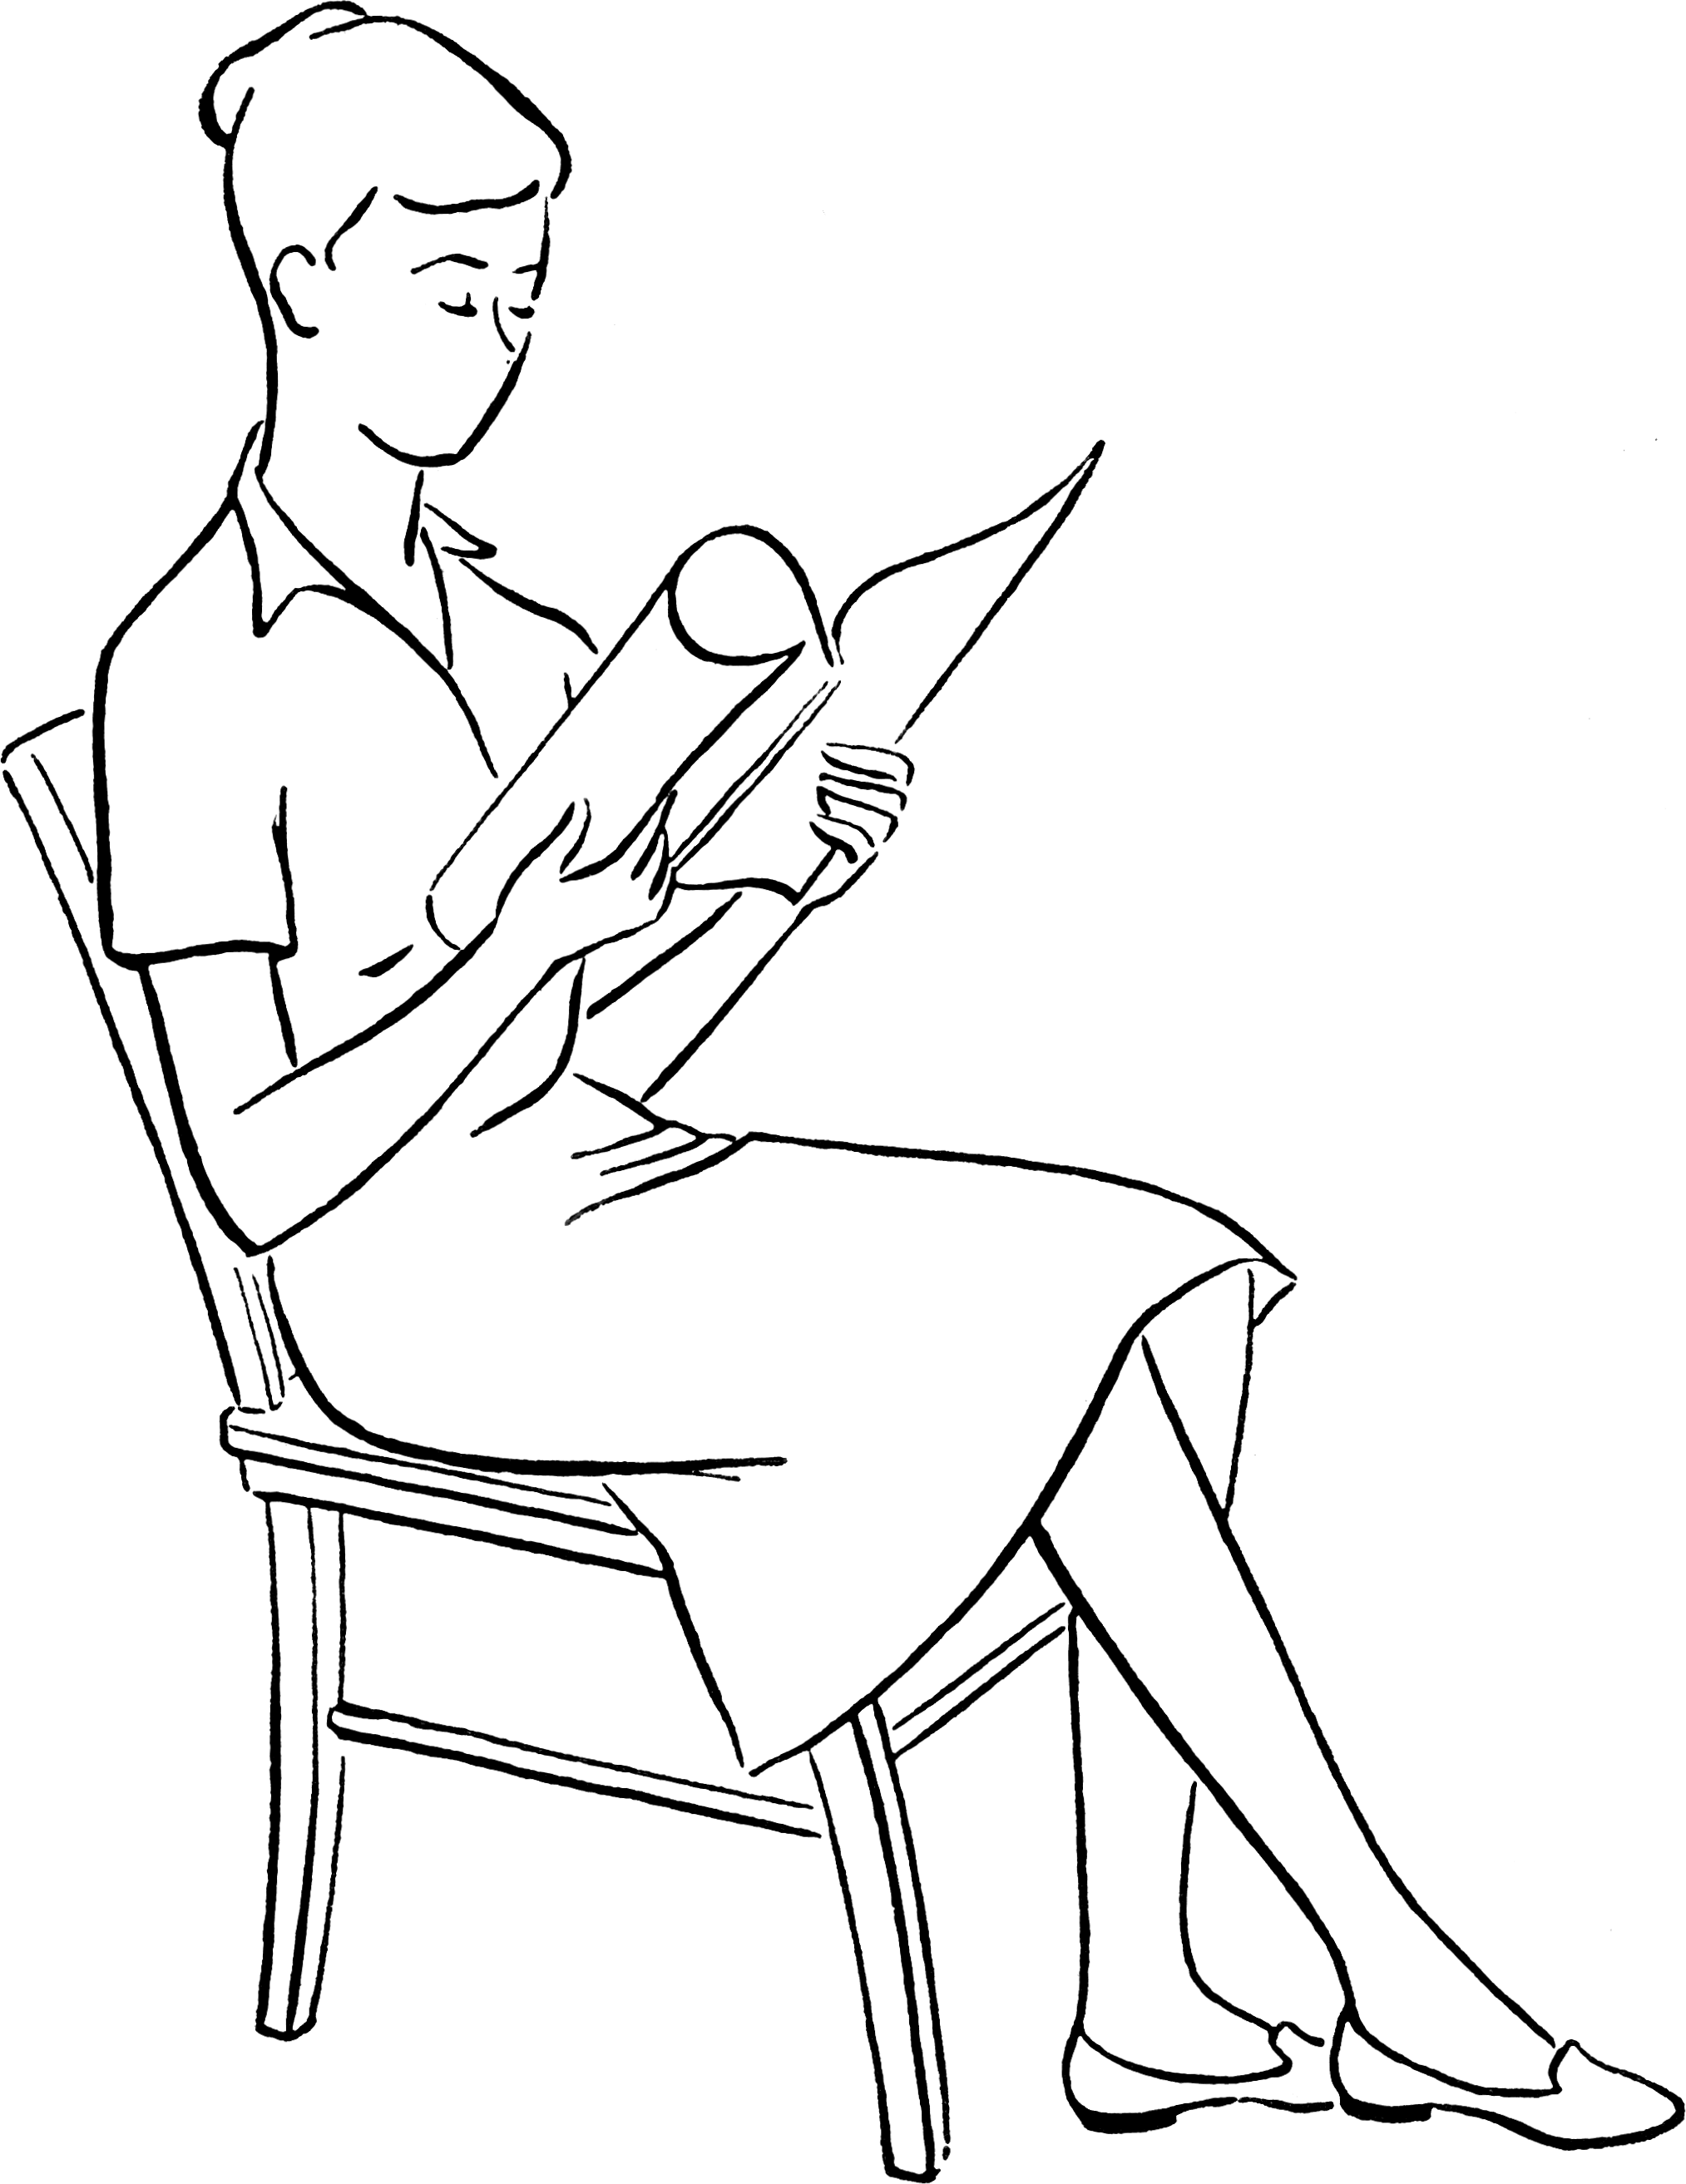 Как нарисовать человека сидящего на стуле - 16 фото